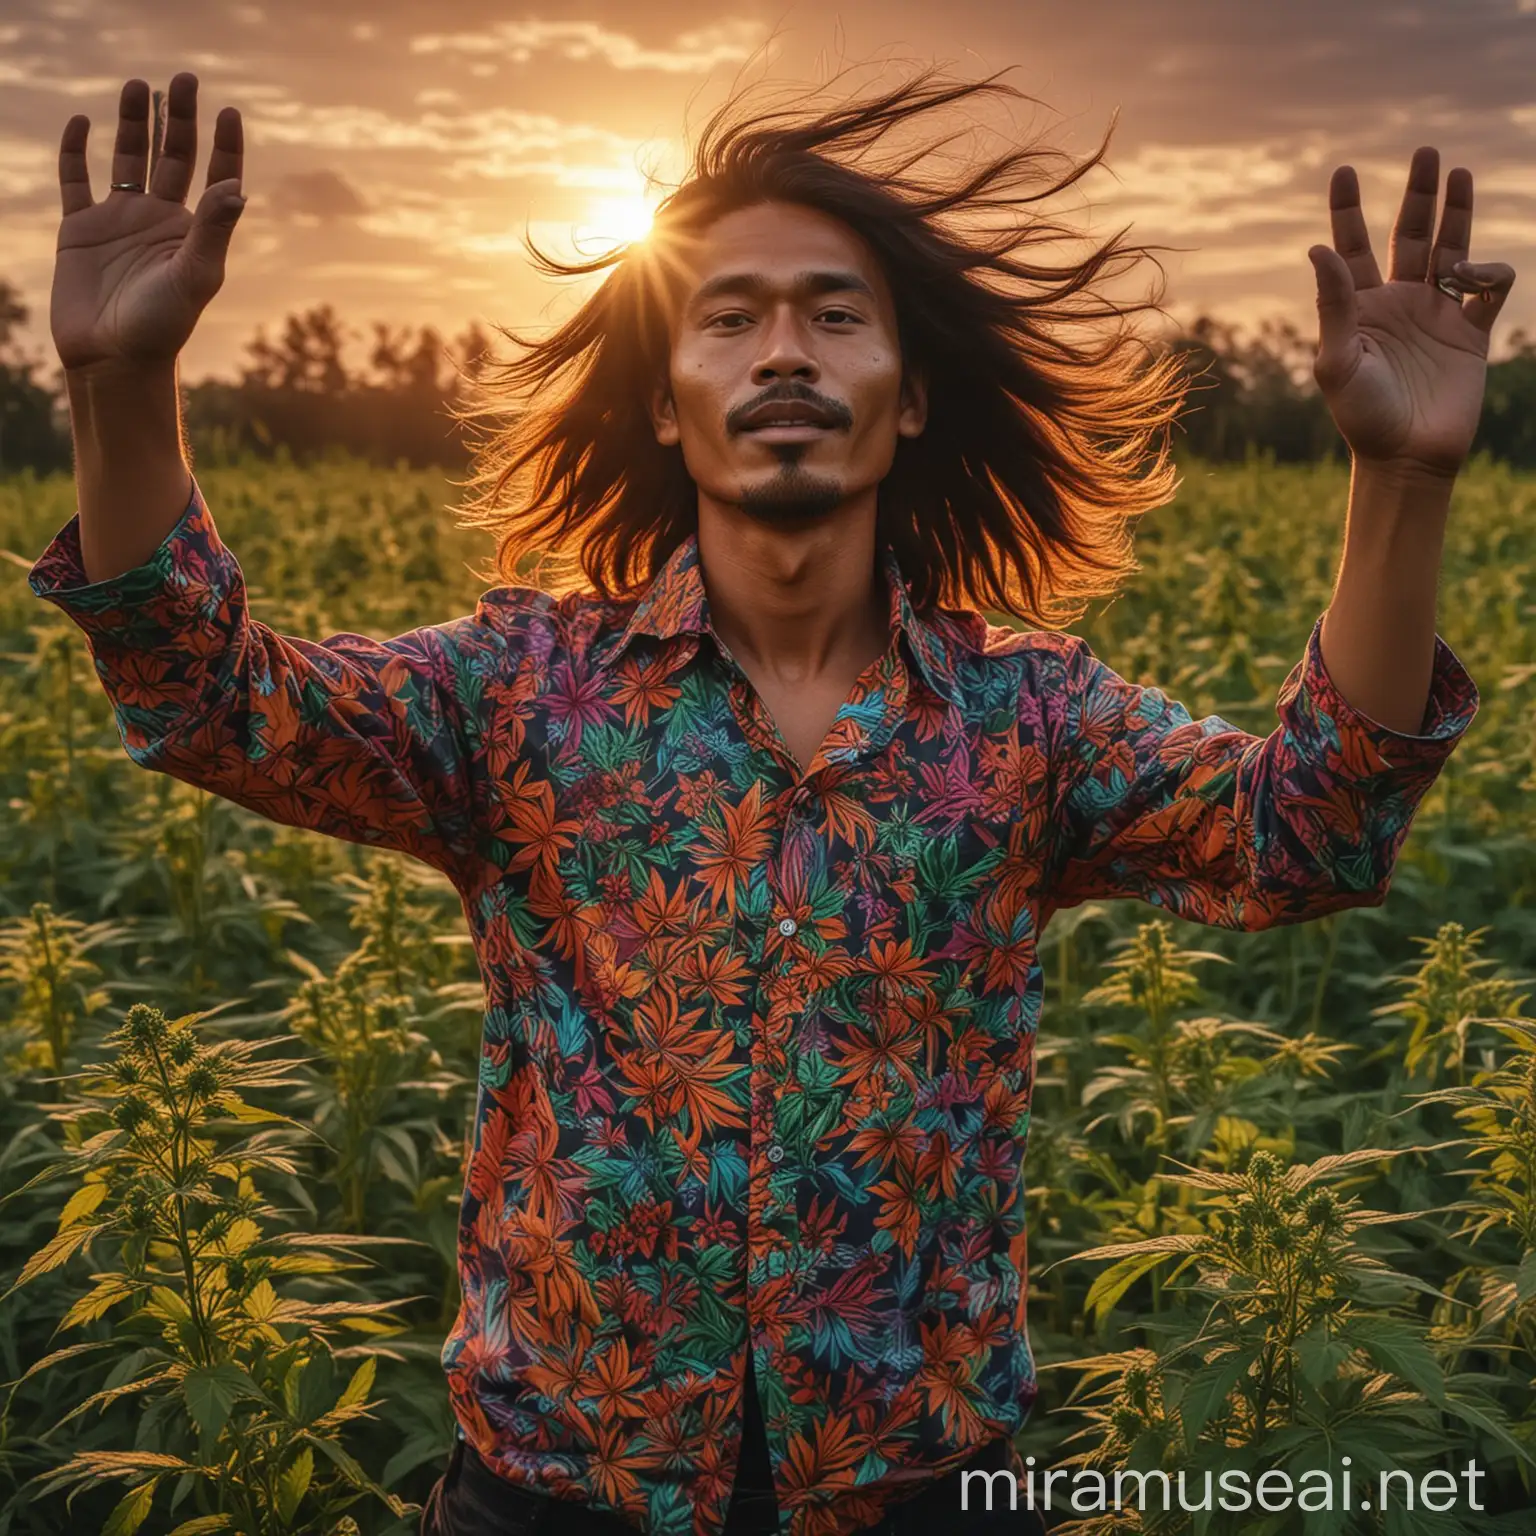 realistic photo,laki laki indonesia, age 40, berambut panjang ditiup angin, memakai kemeja psychedelic,membentangkan tangan, berdiri di tengah ladang ganja ,pada sore hari,sunset menyorti, HD kualitas, focus camera canon